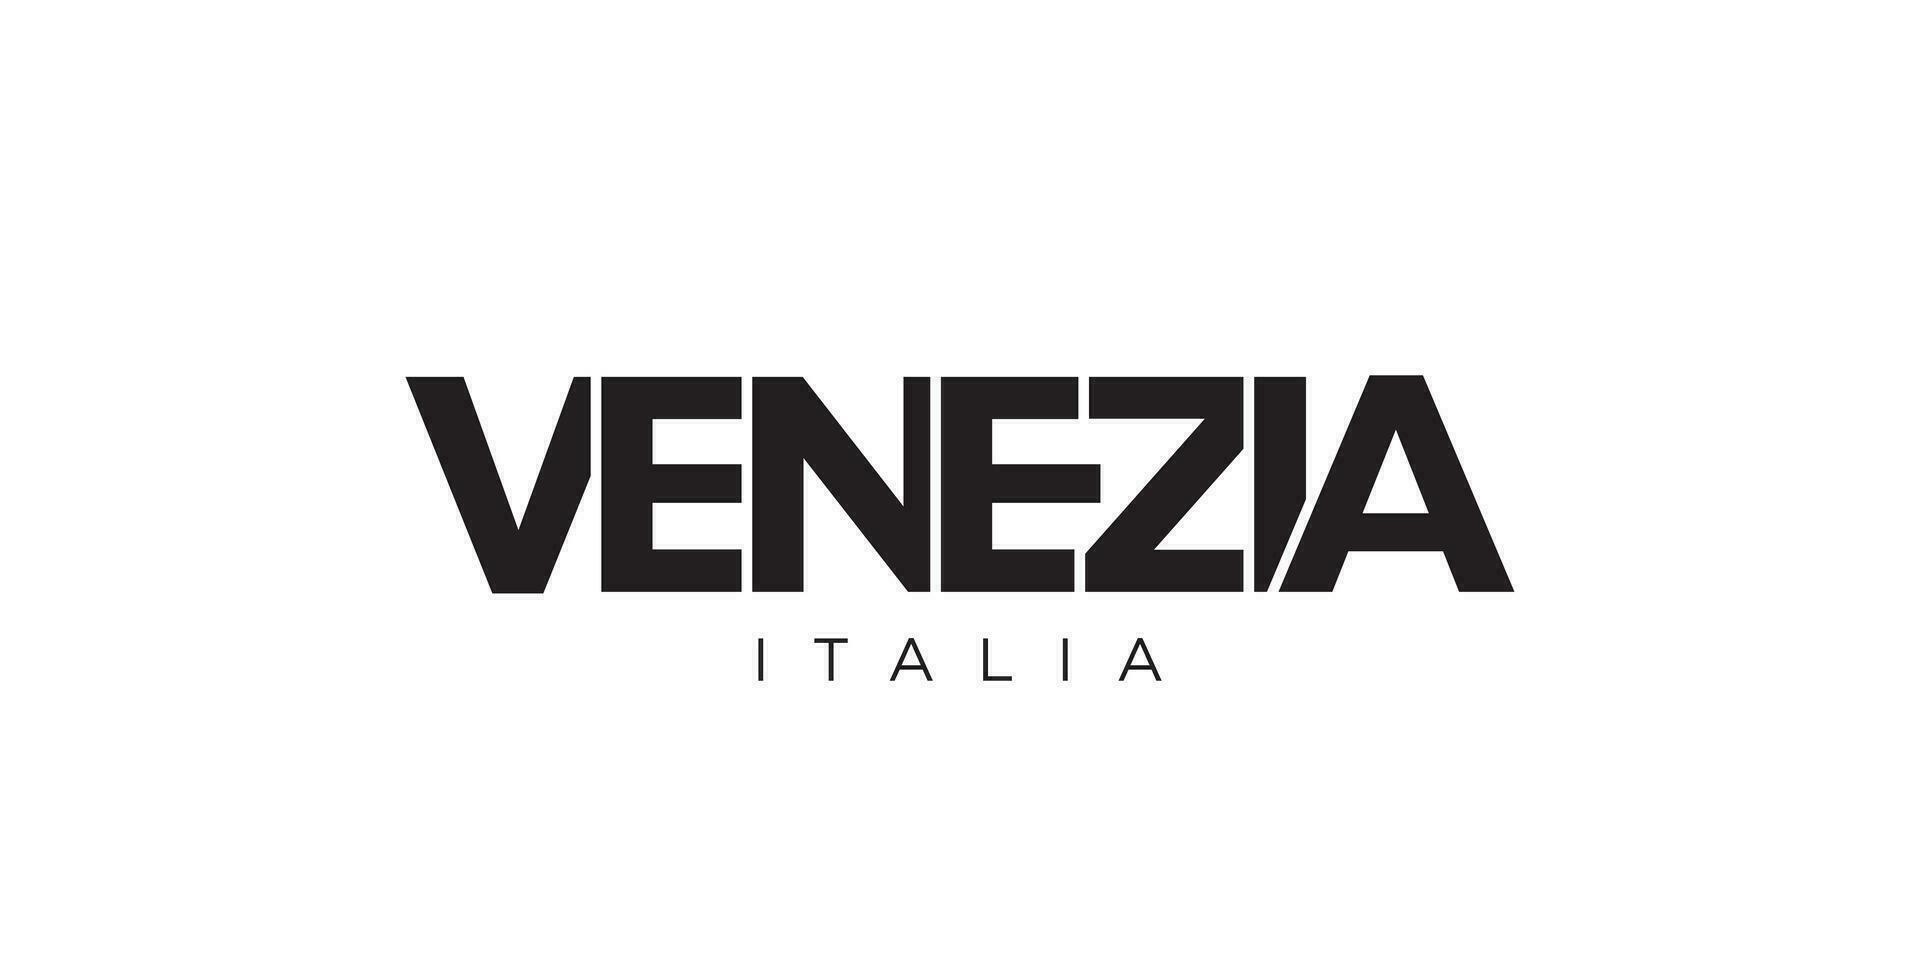 venezia im das Italien Emblem. das Design Eigenschaften ein geometrisch Stil, Vektor Illustration mit Fett gedruckt Typografie im ein modern Schriftart. das Grafik Slogan Beschriftung.